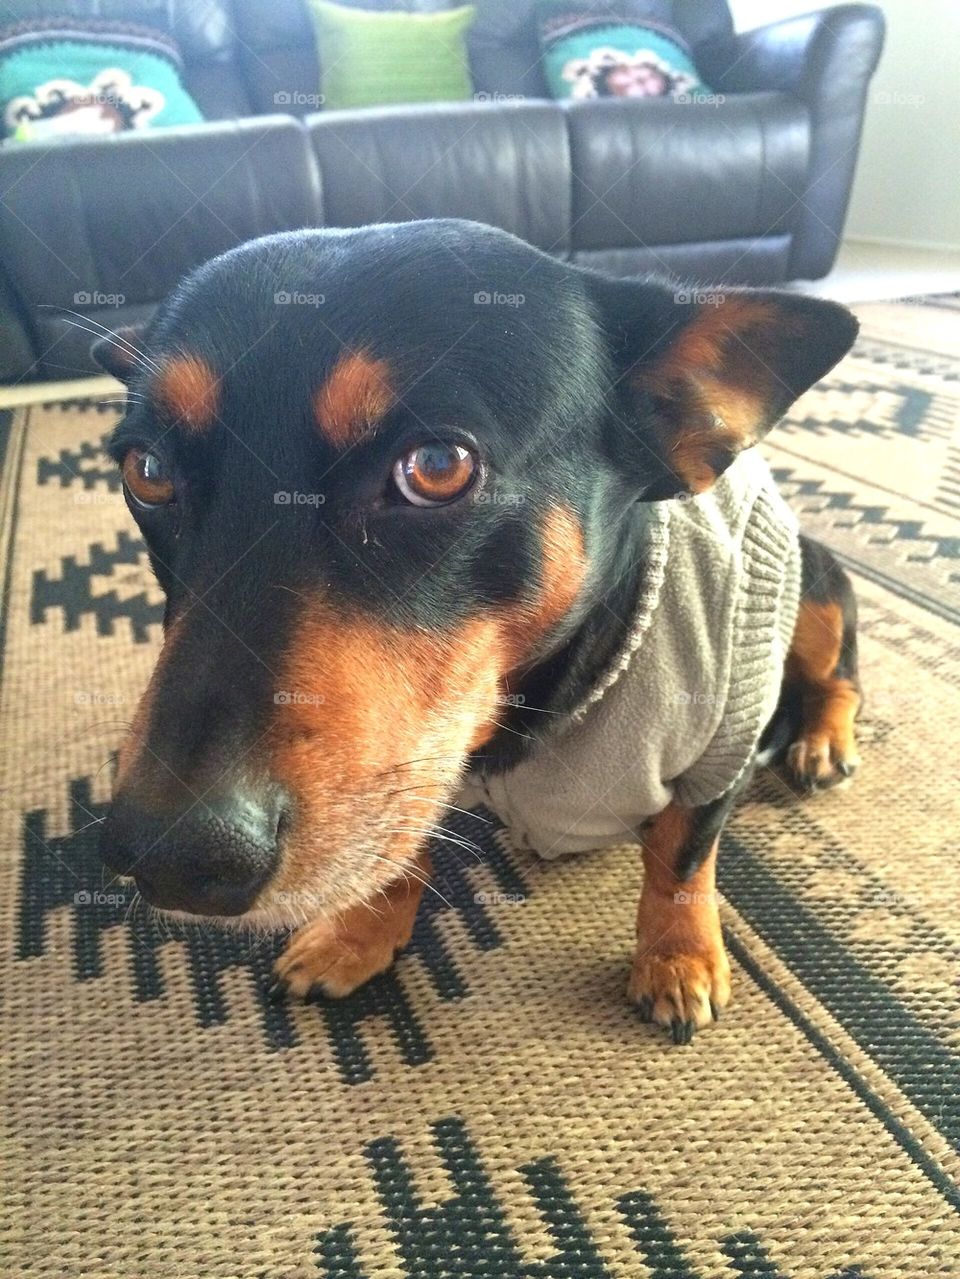 Dog wearing jumper 